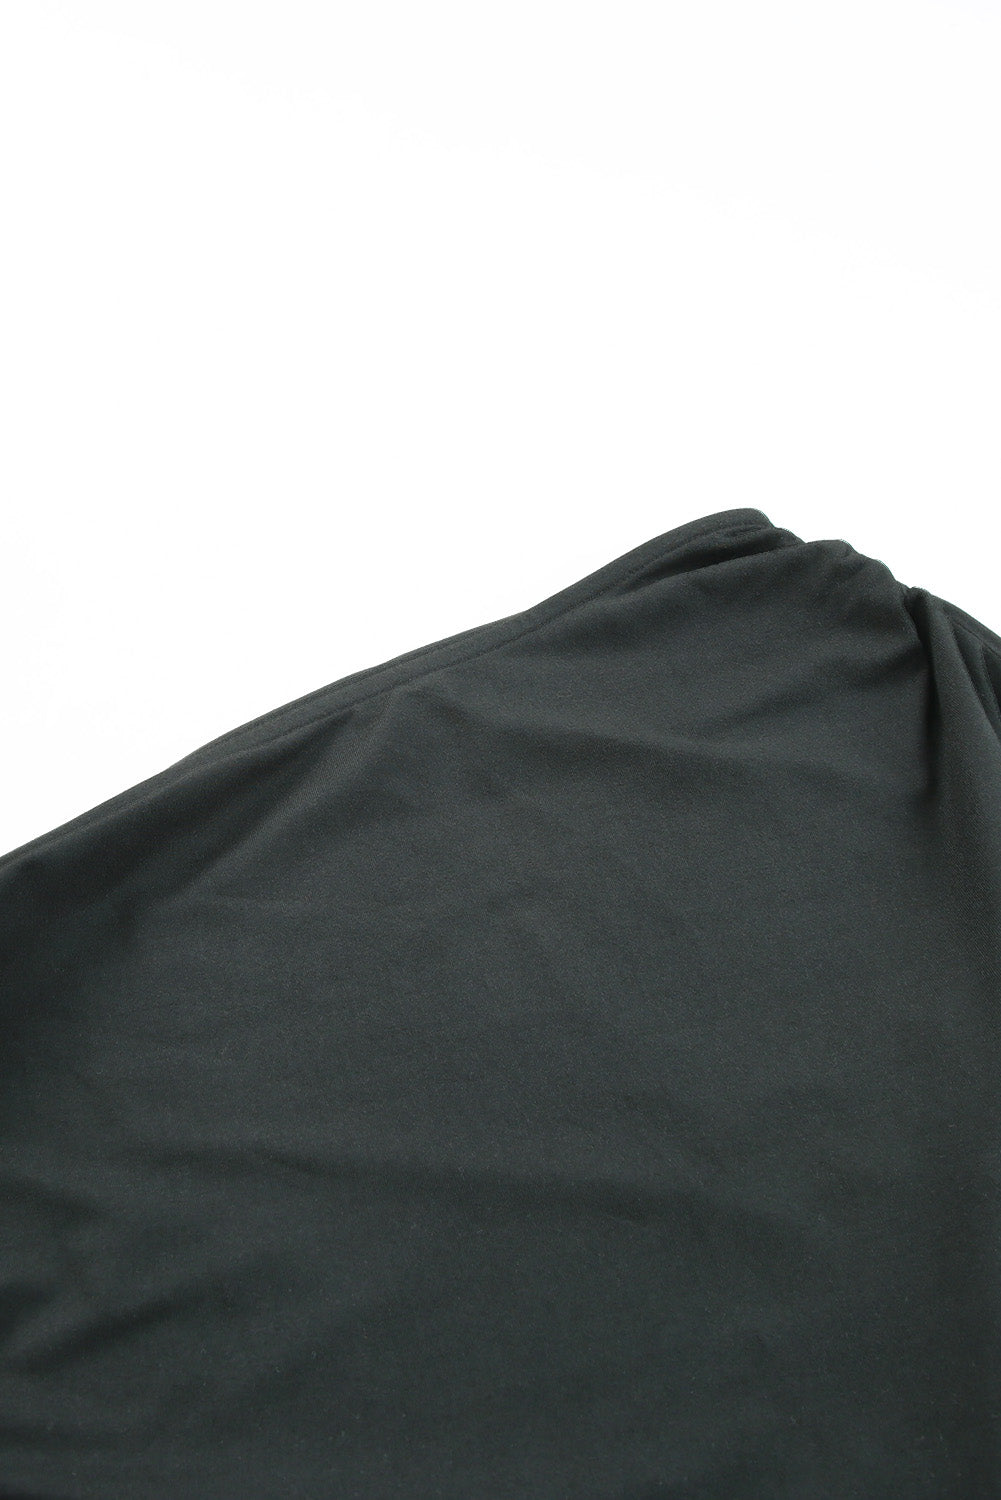 Črna oprijeta obleka z naborki in kratkimi rokavi z eno ramo